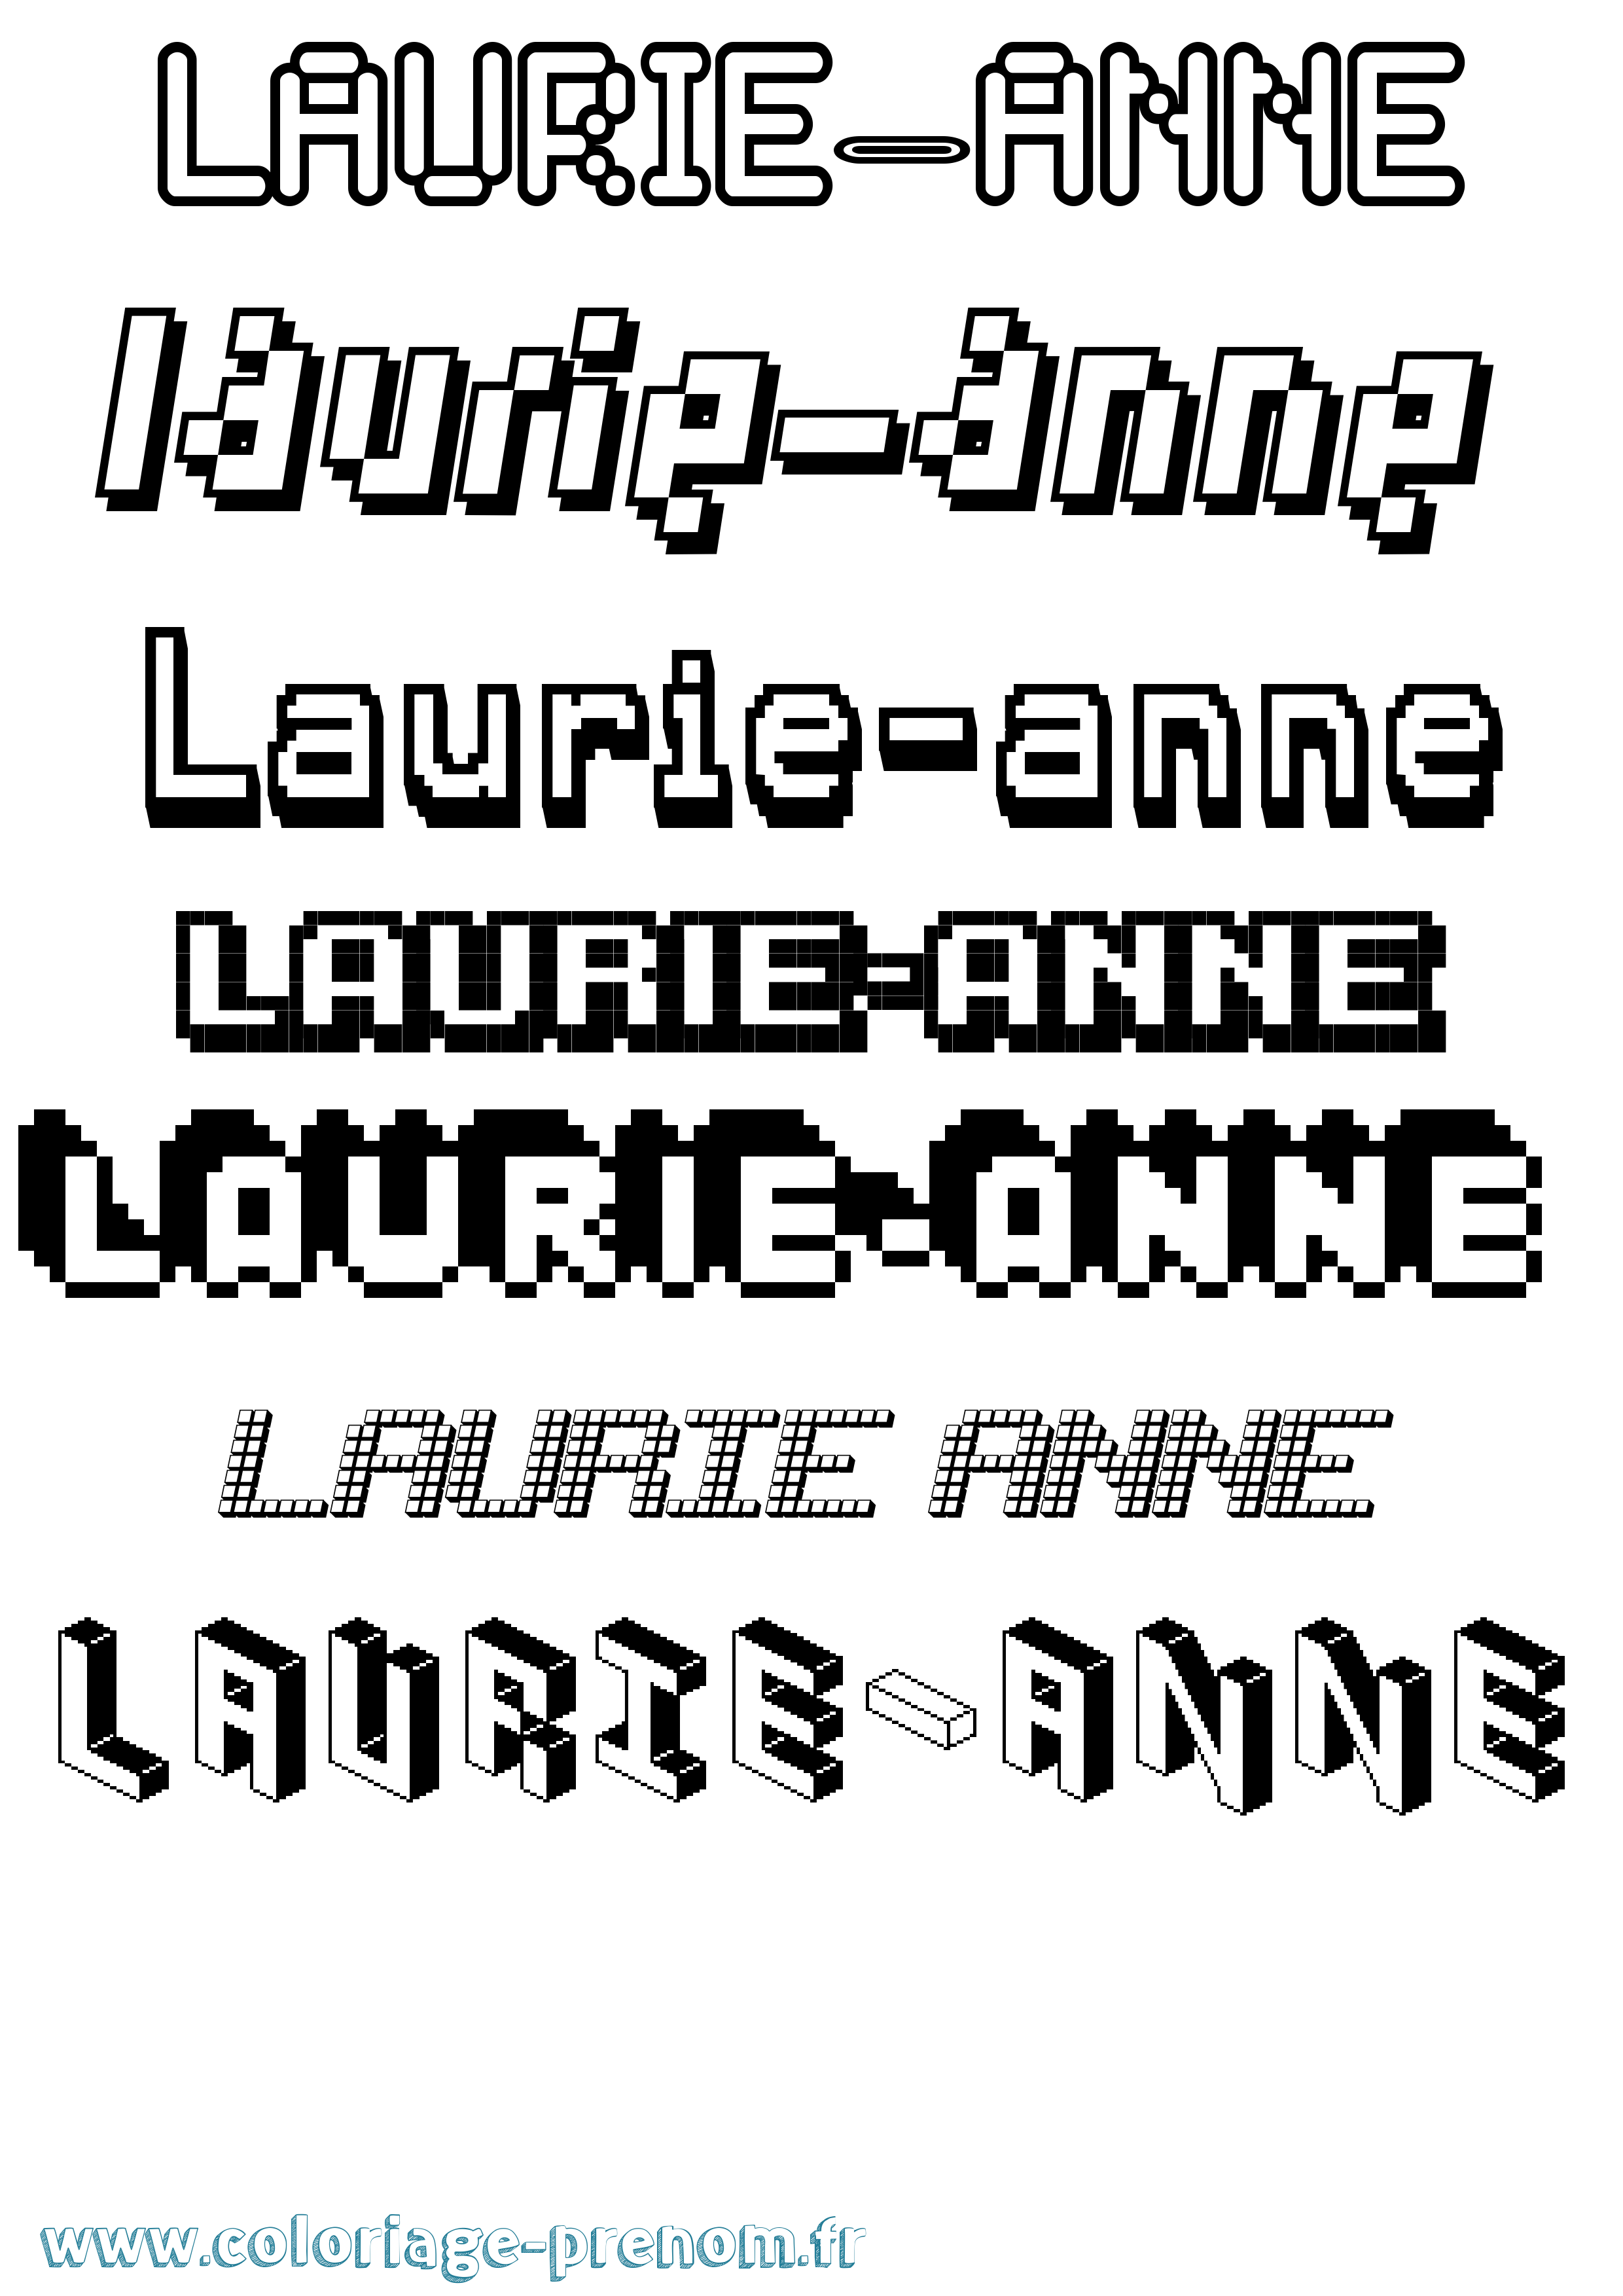 Coloriage prénom Laurie-Anne Pixel